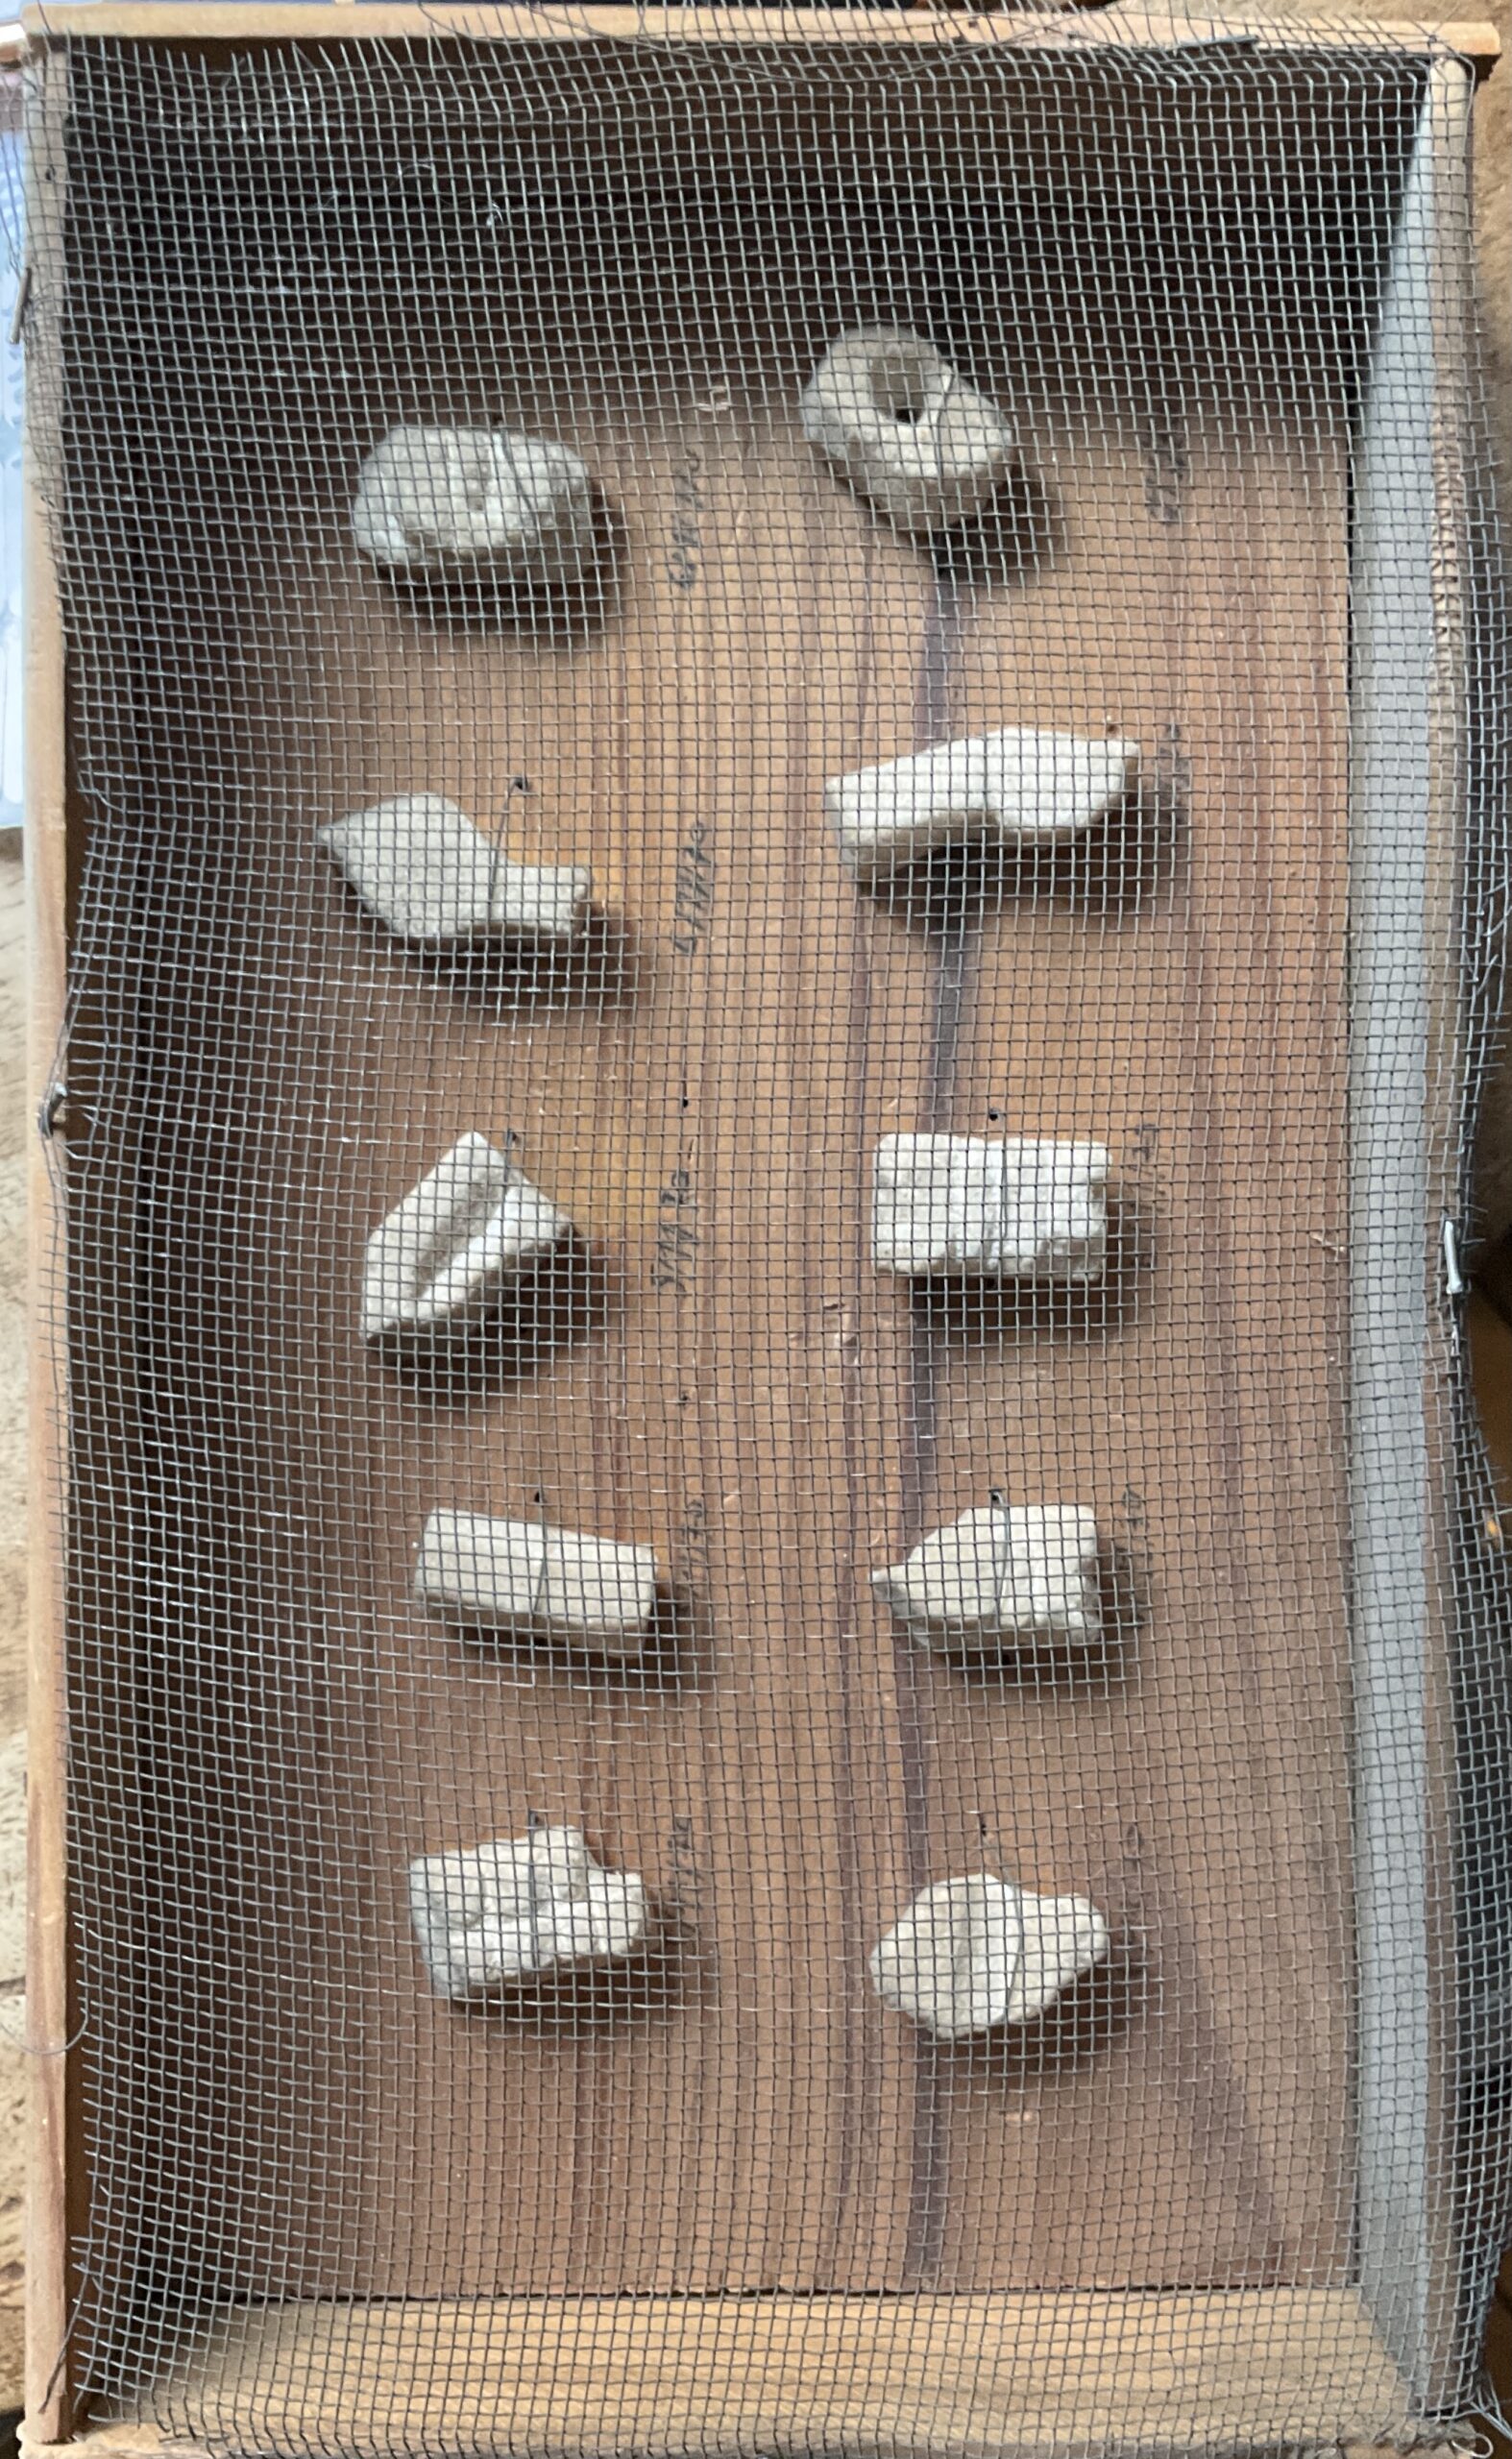 Sucres taillés par Christian Boltanski, 11/1970 Daté 5.11. 70 10 sucres taillés, fixés avec un fil de fer, dans un boîte en bois recouverte d’un grillage, chaque sucre daté en dessous du 3//11/70 au ?/11/70. 16 x 26,5 cm